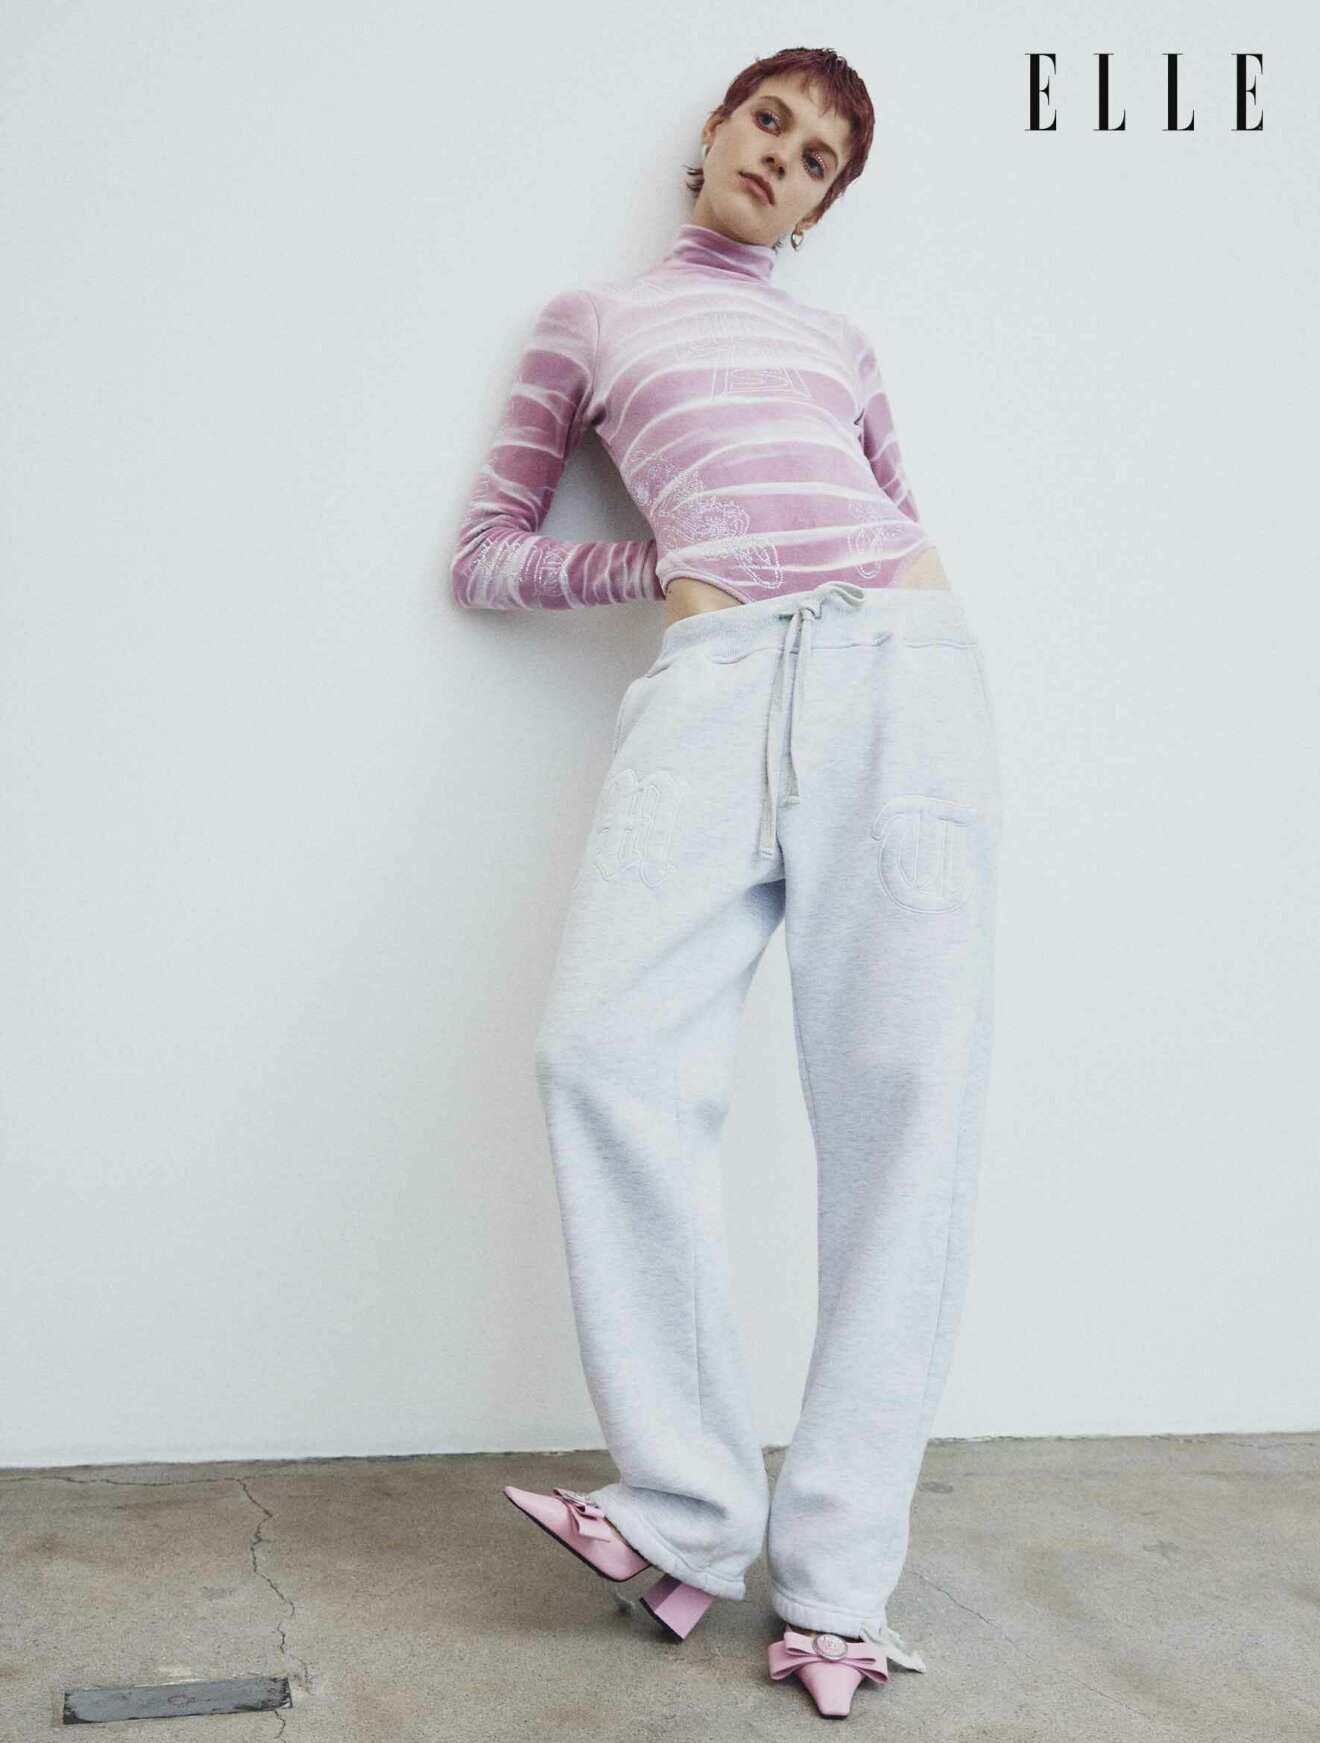 Modellen lutar sig på en vägg, hon har på sig en rosa body och ljusa mjukisbyxor